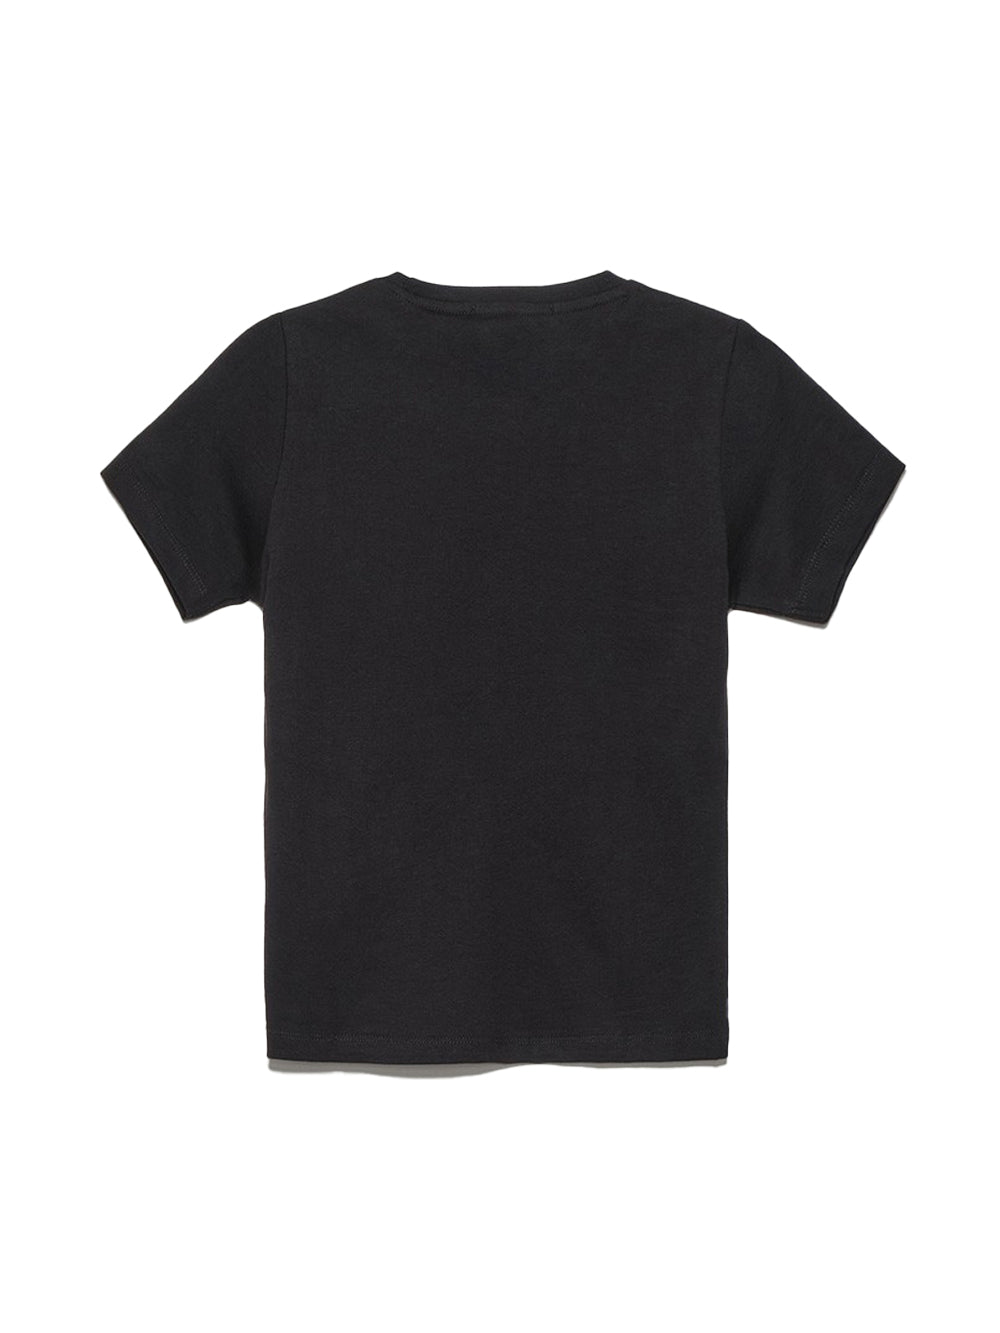 HINNOMINATE Hinnominate t-shirt manica corta bambina nero